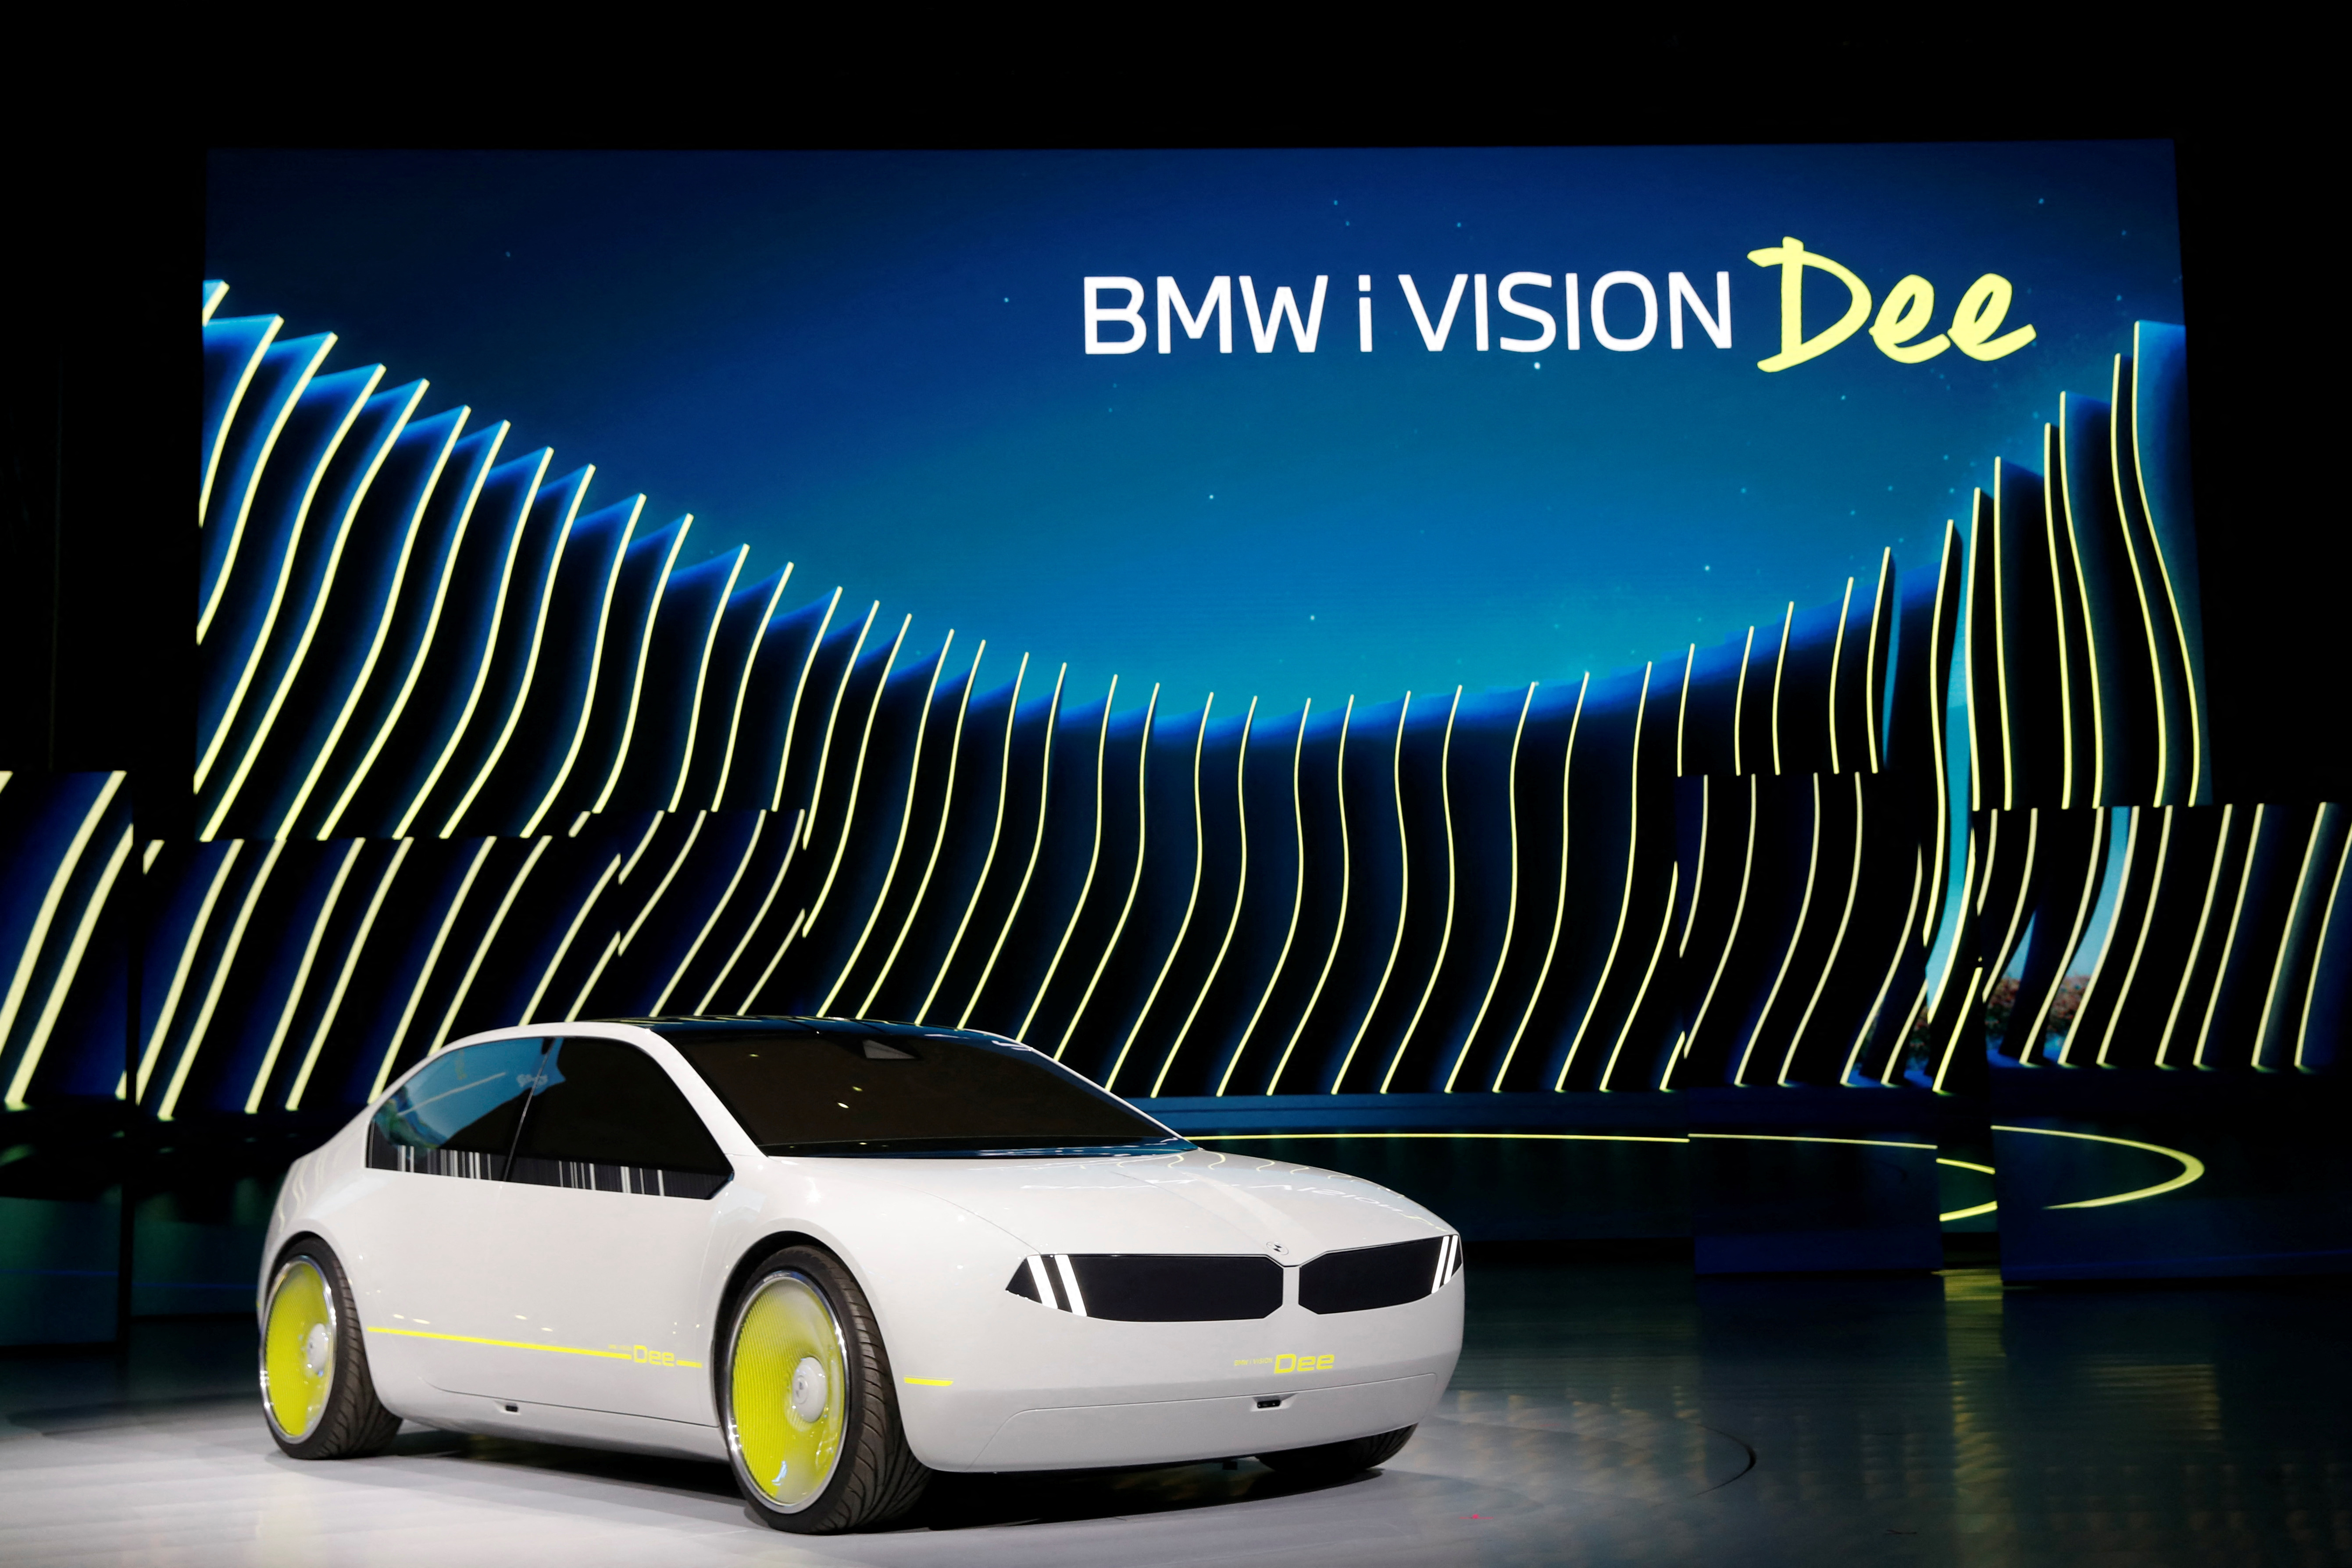 La concept car BMW i Vision Dee (Digital Emotional Experience) viene mostrata sul palco dopo la sua presentazione durante un discorso di apertura della BMW al CES 2023, una fiera annuale dell'elettronica di consumo a Las Vegas, Nevada, USA, il 4 gennaio 2023. REUTERS/Steve Marco